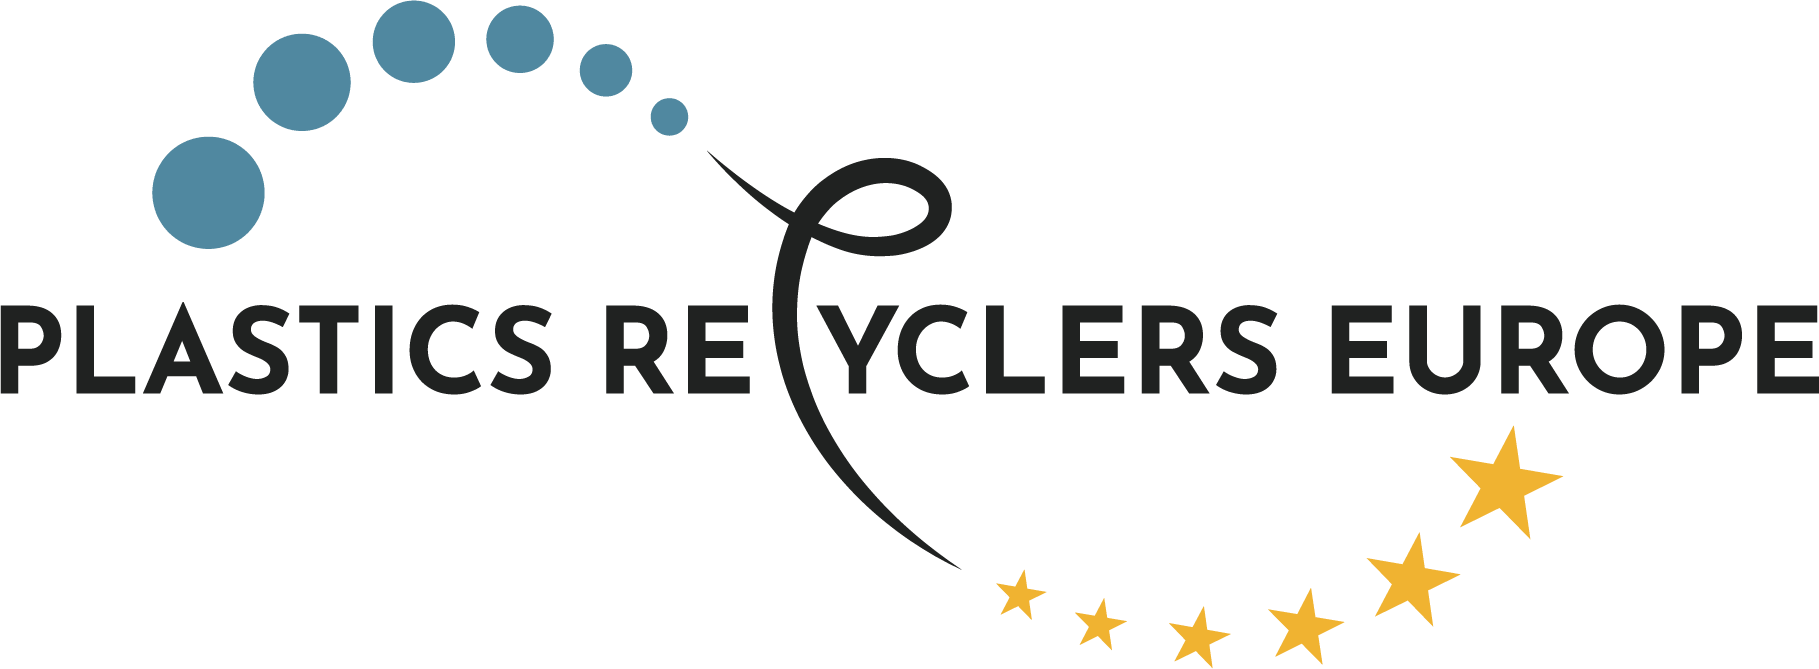 plastics recyclers